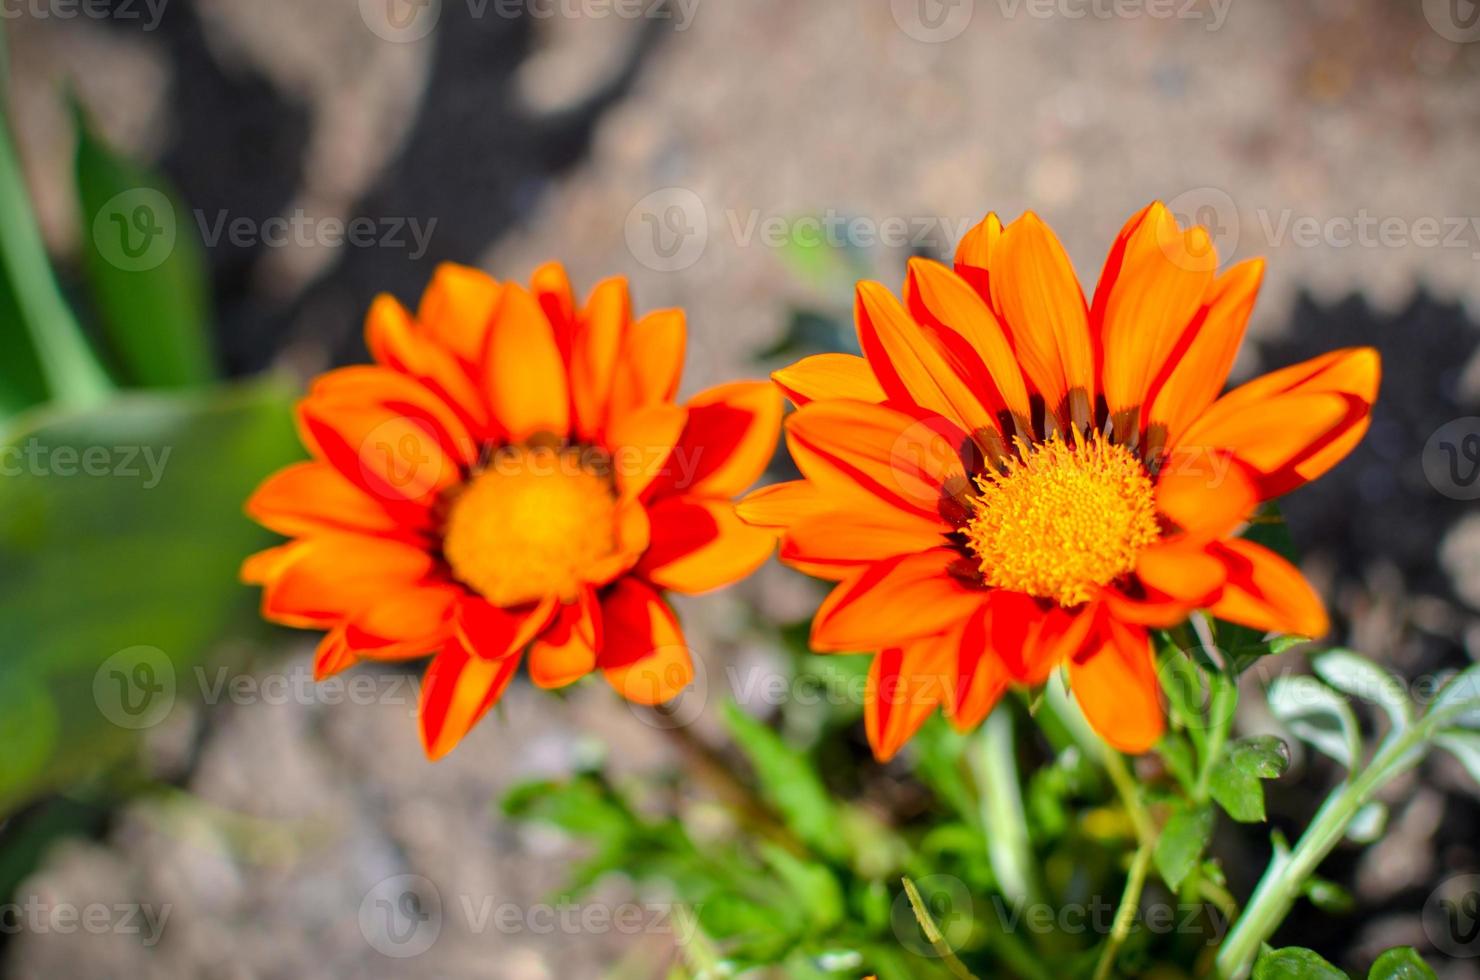 närbild av två gazania rigens blommor med orange kronblad foto